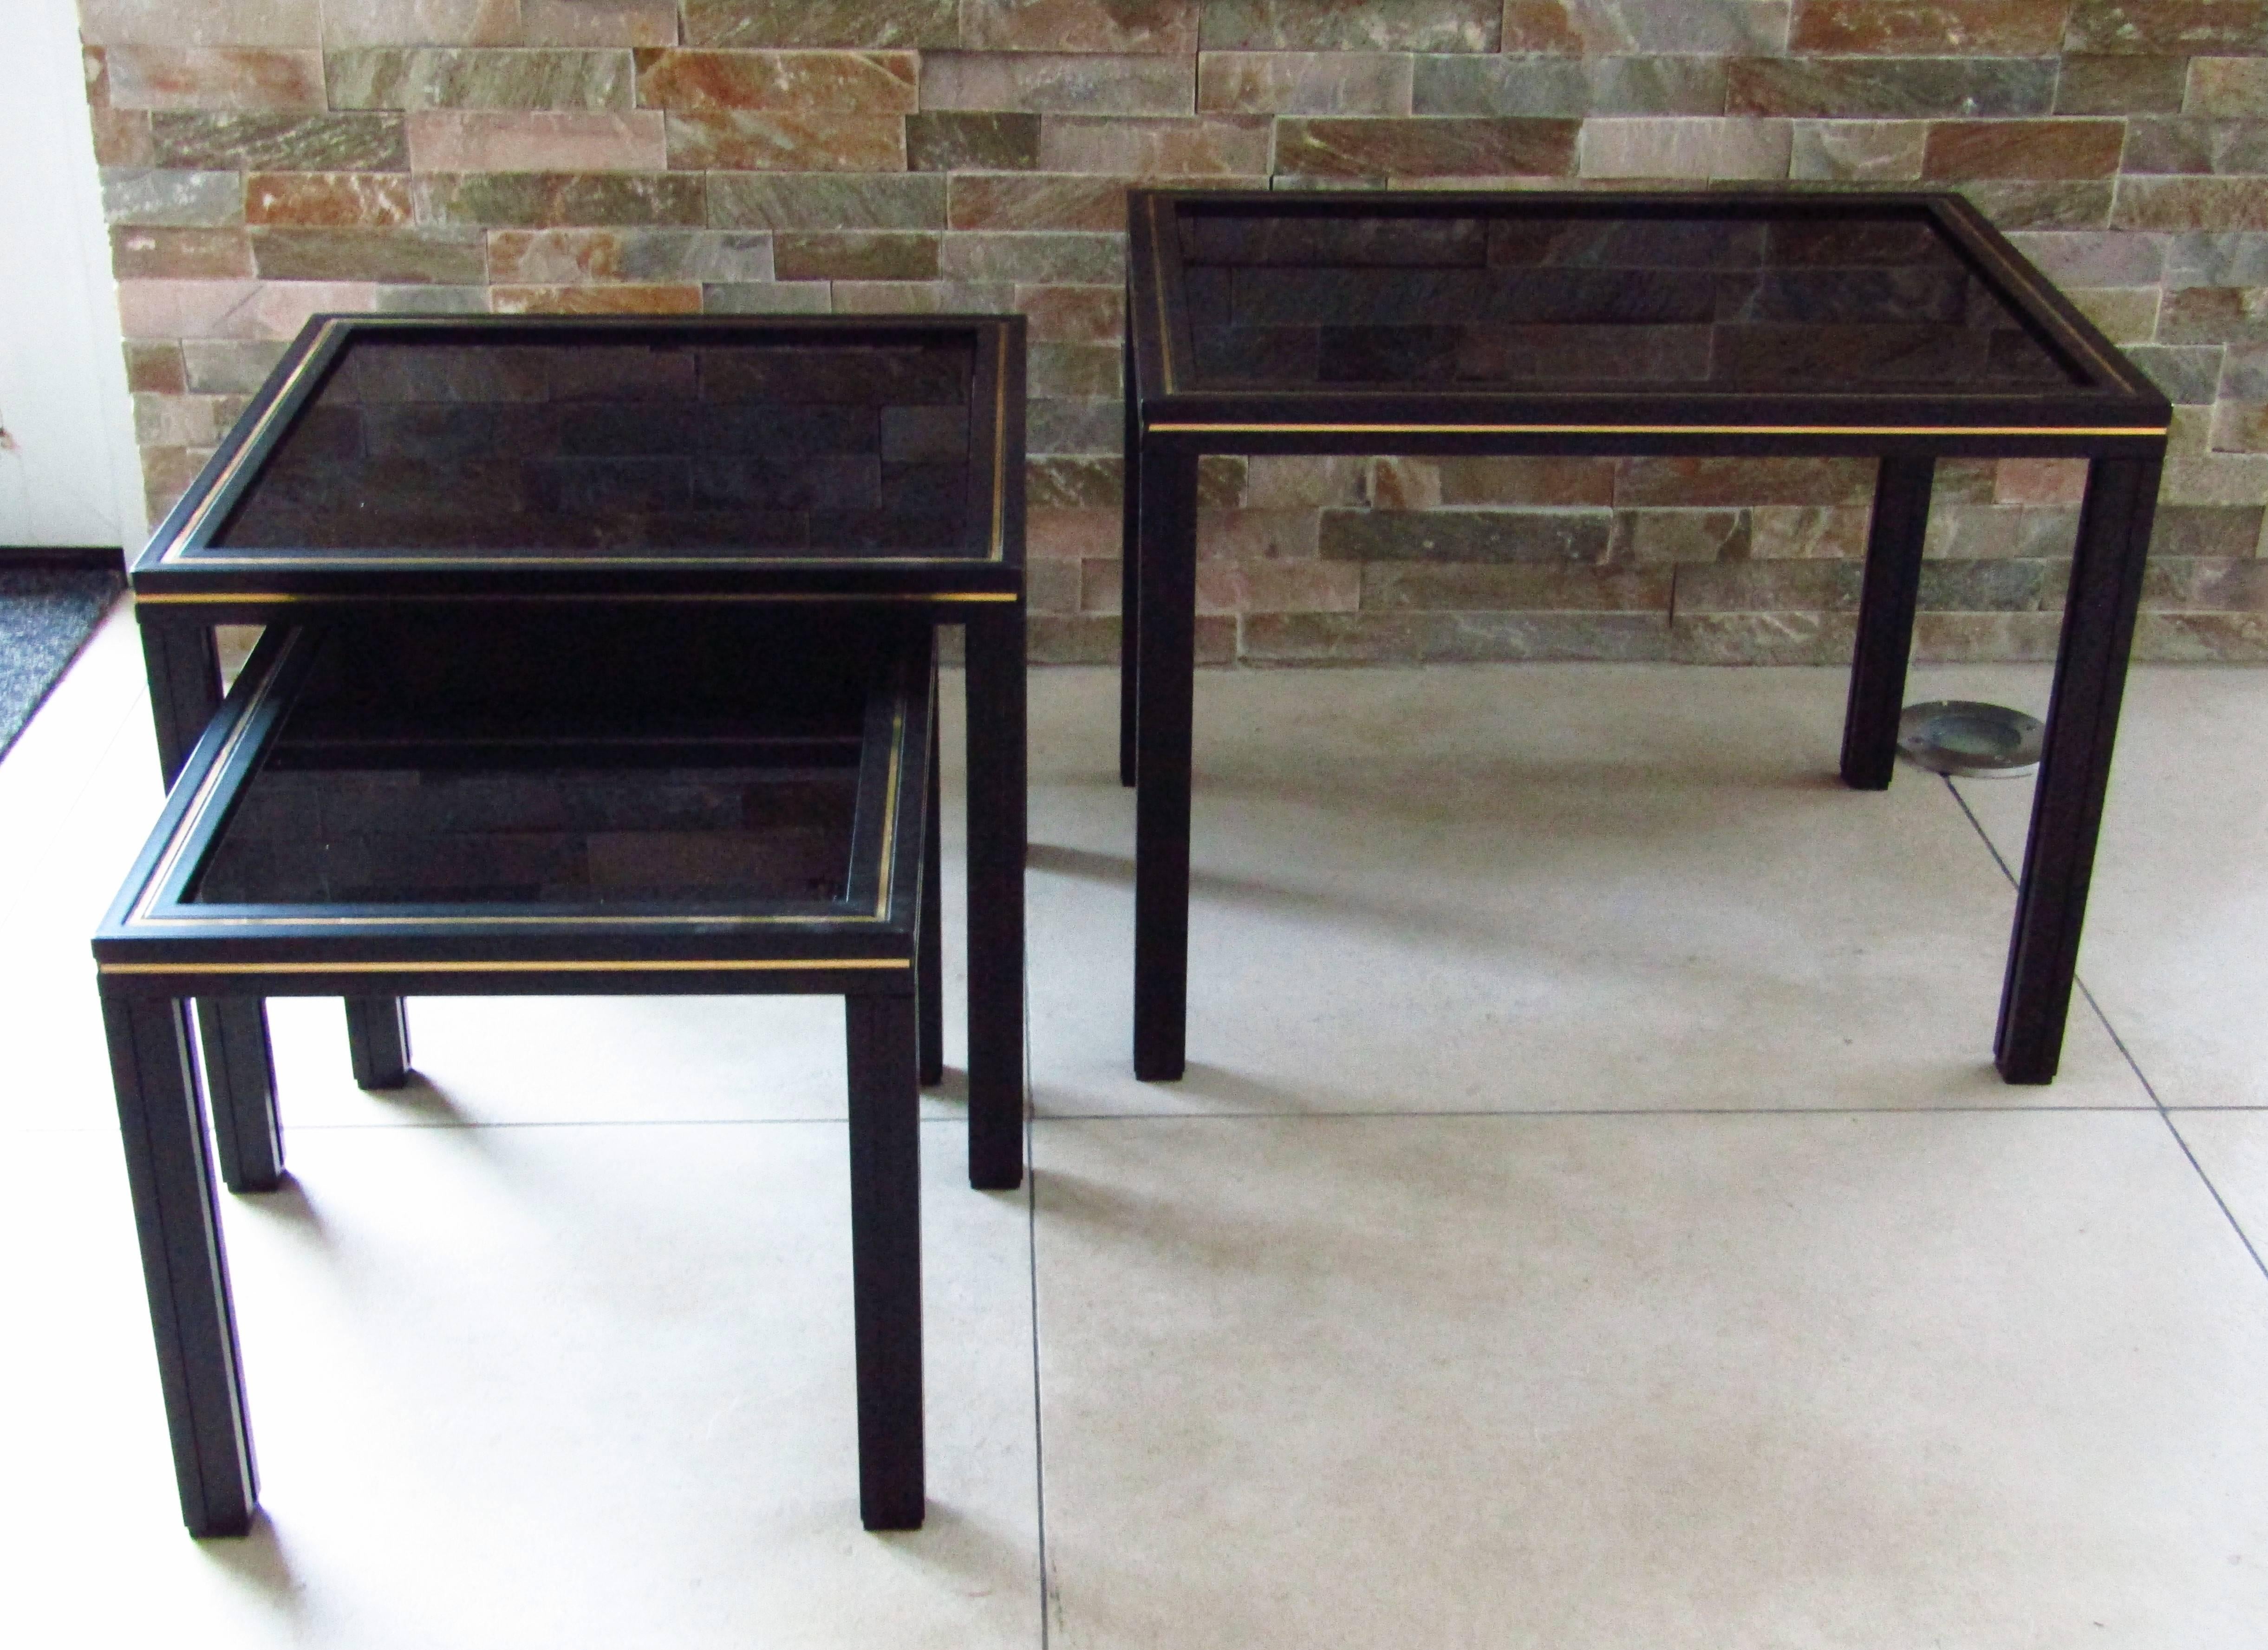 Französisches Vintage-Set aus drei Tischen von Pierre Vandel aus schwarz lackiertem Aluminium mit Messingakzenten und schwarzen Glasplatten. Oben signiert.

Der mittlere Tisch misst 13 7/8